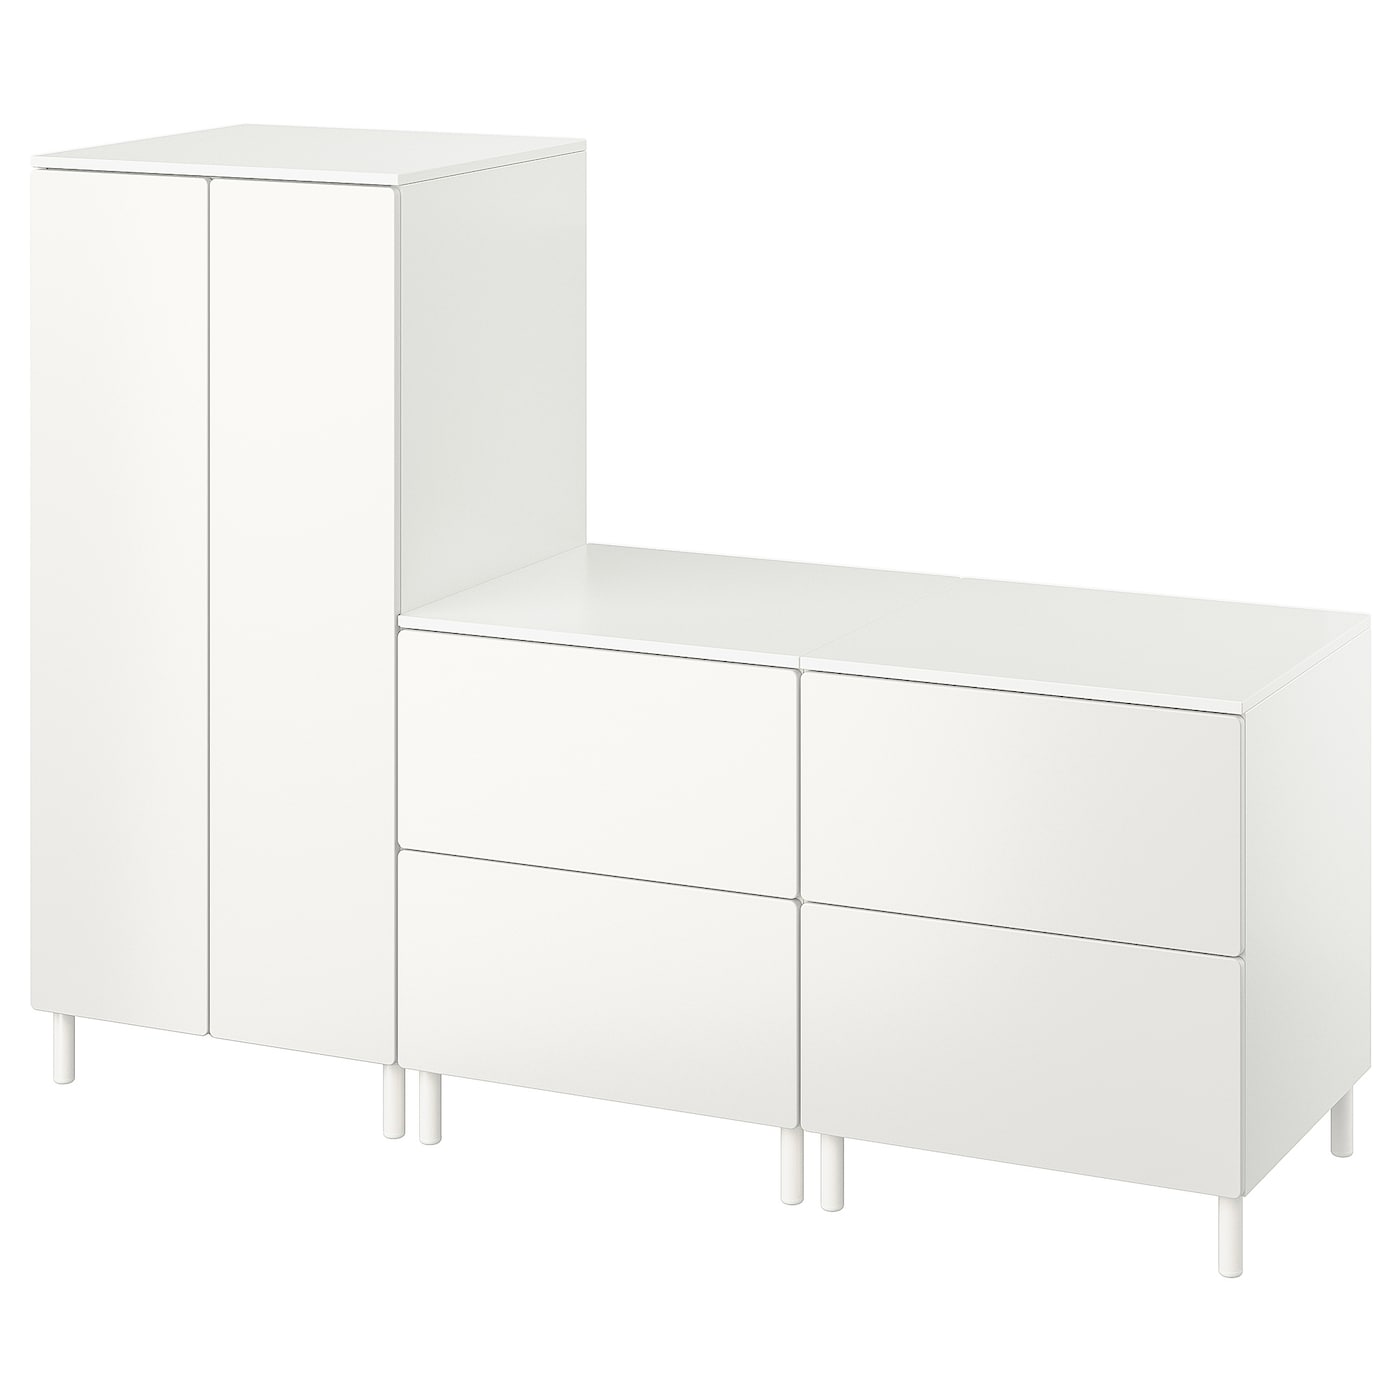 Детская гардеробная комбинация - IKEA PLATSA SMÅSTAD/SMASTAD, 180x57x133см, белый, ПЛАТСА СМОСТАД ИКЕА